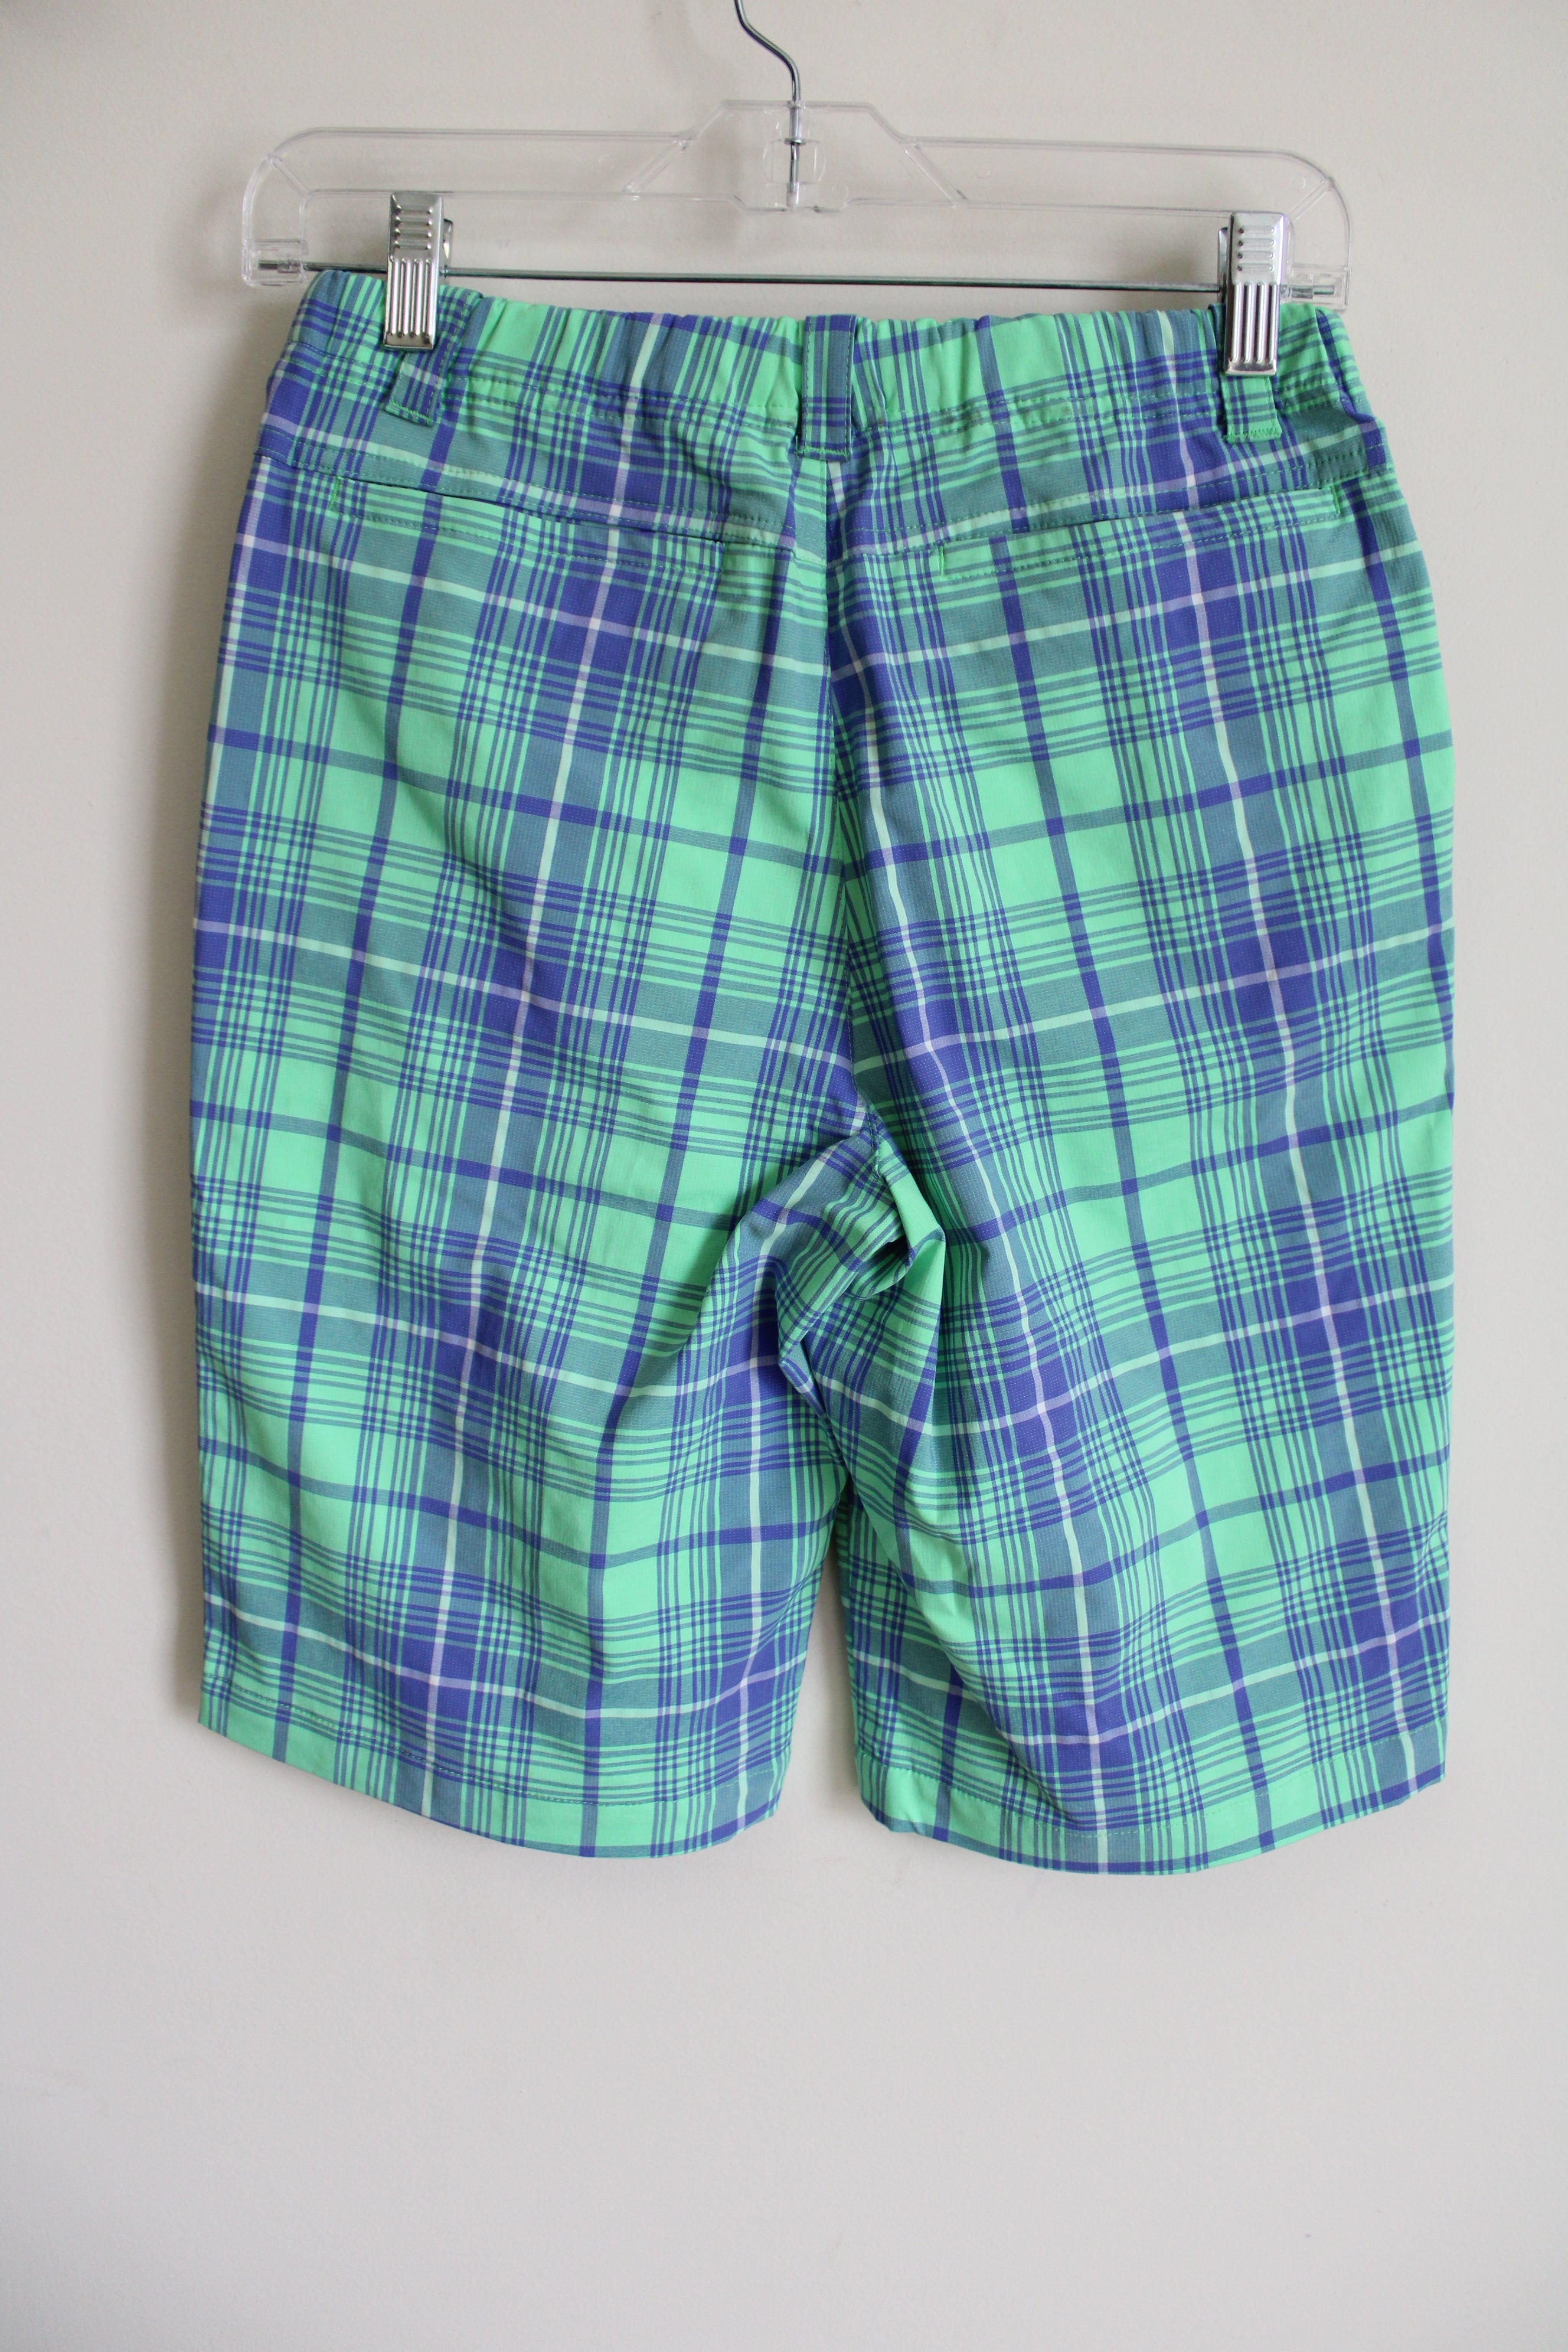 Nike Dri-Fit Green Blue Plaid Shorts | L (14/16)